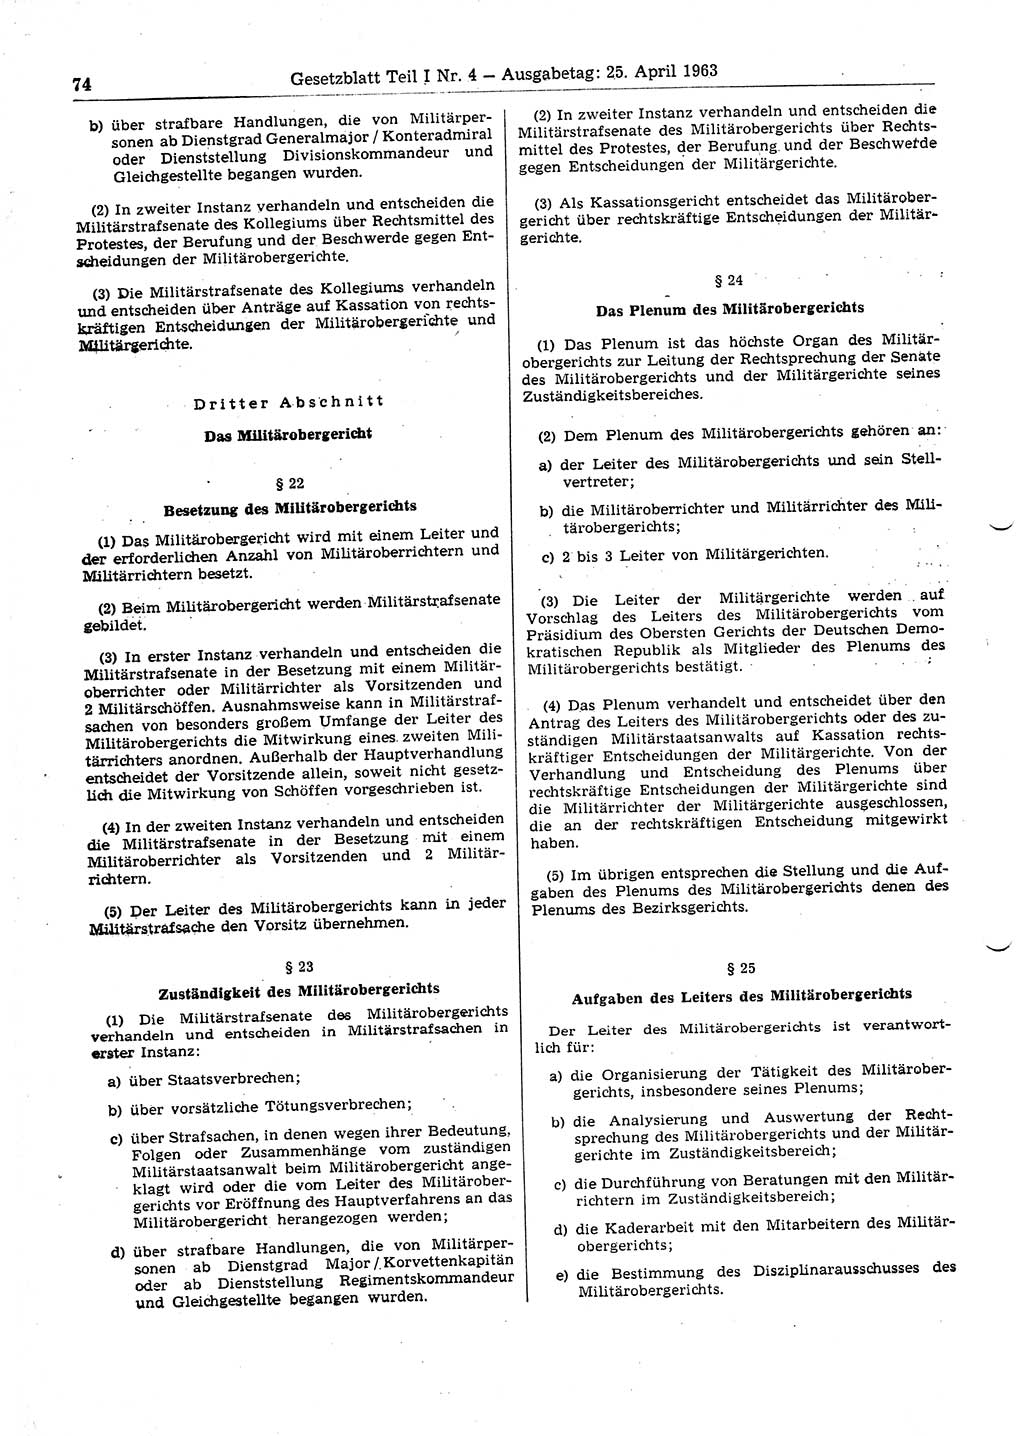 Gesetzblatt (GBl.) der Deutschen Demokratischen Republik (DDR) Teil Ⅰ 1963, Seite 74 (GBl. DDR Ⅰ 1963, S. 74)